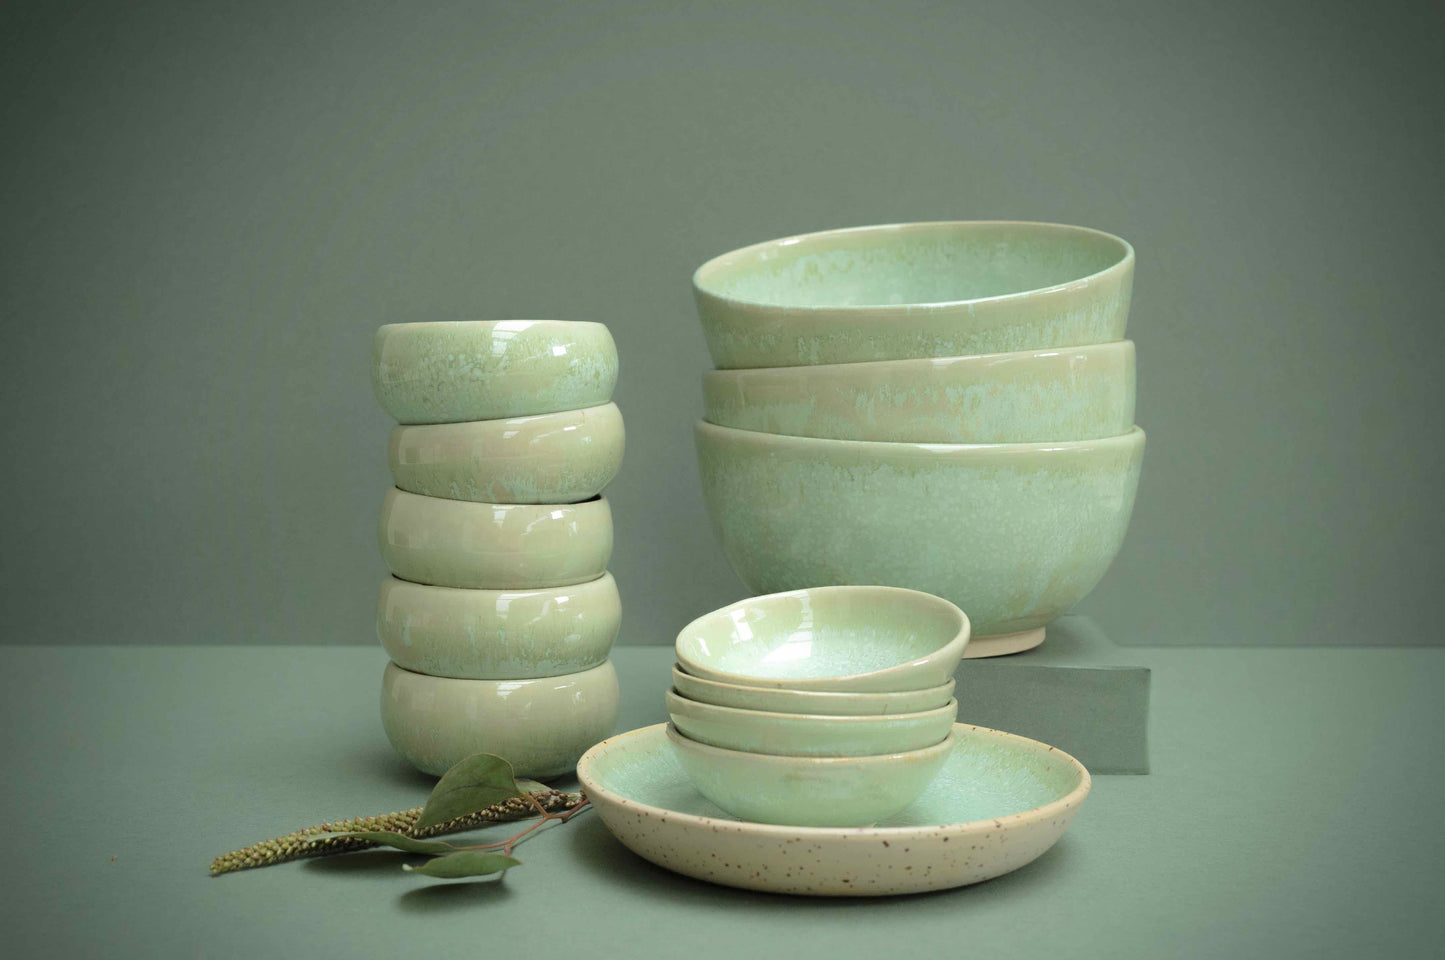 Green small bowls